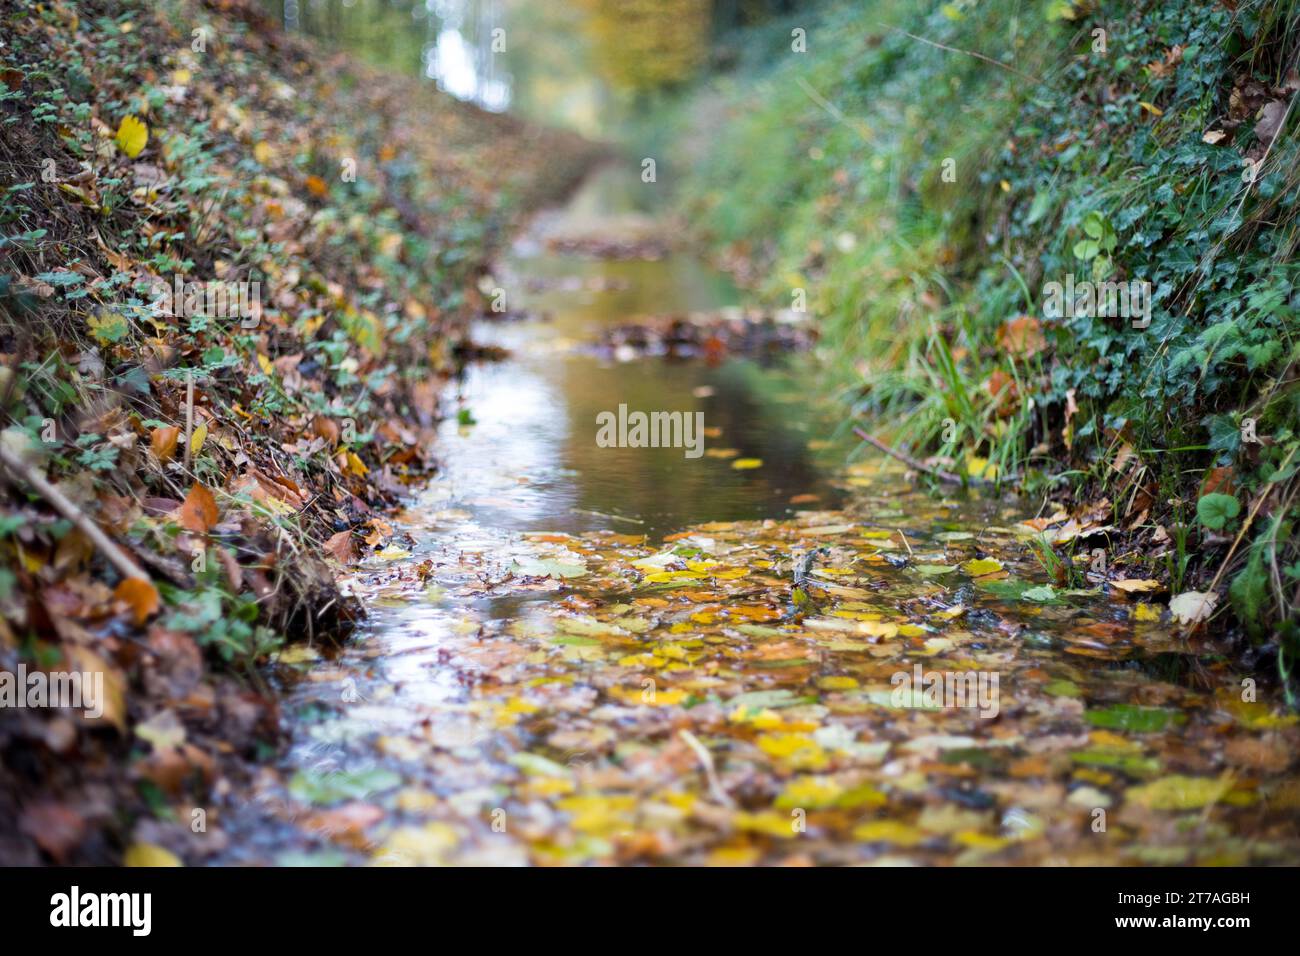 Eine kleine Bach beim Spaziergang durch eine Herbstlandschaft mit Blättern im November Banque D'Images